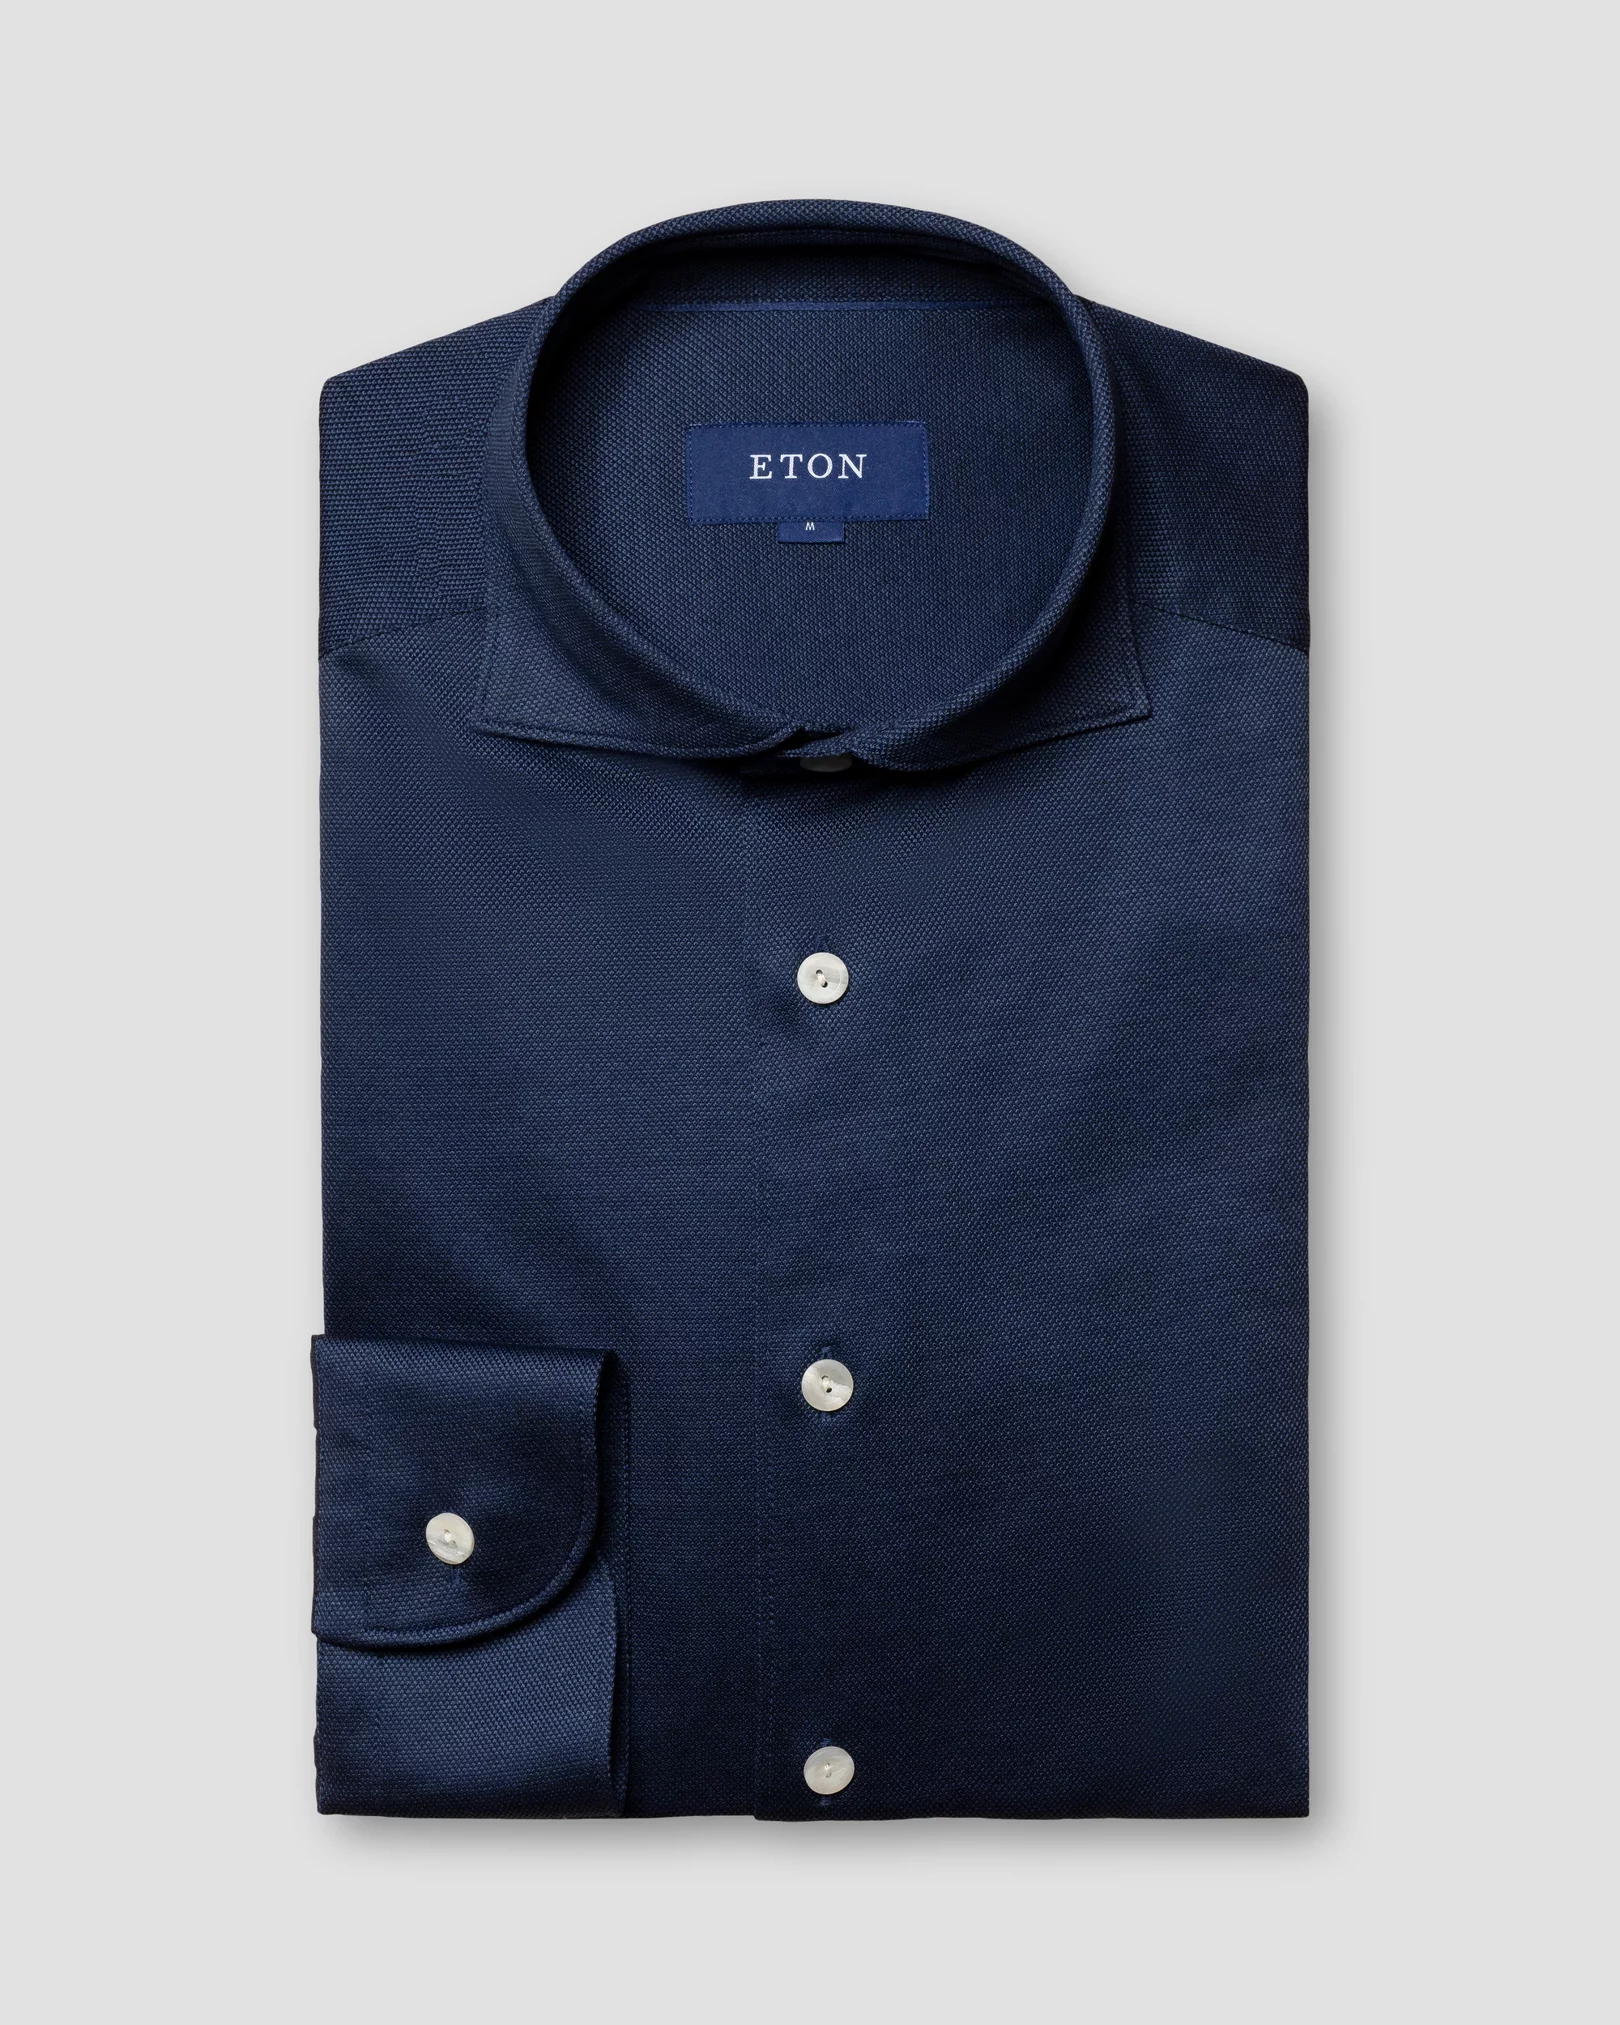 Eton - navy blue jersey wide spread